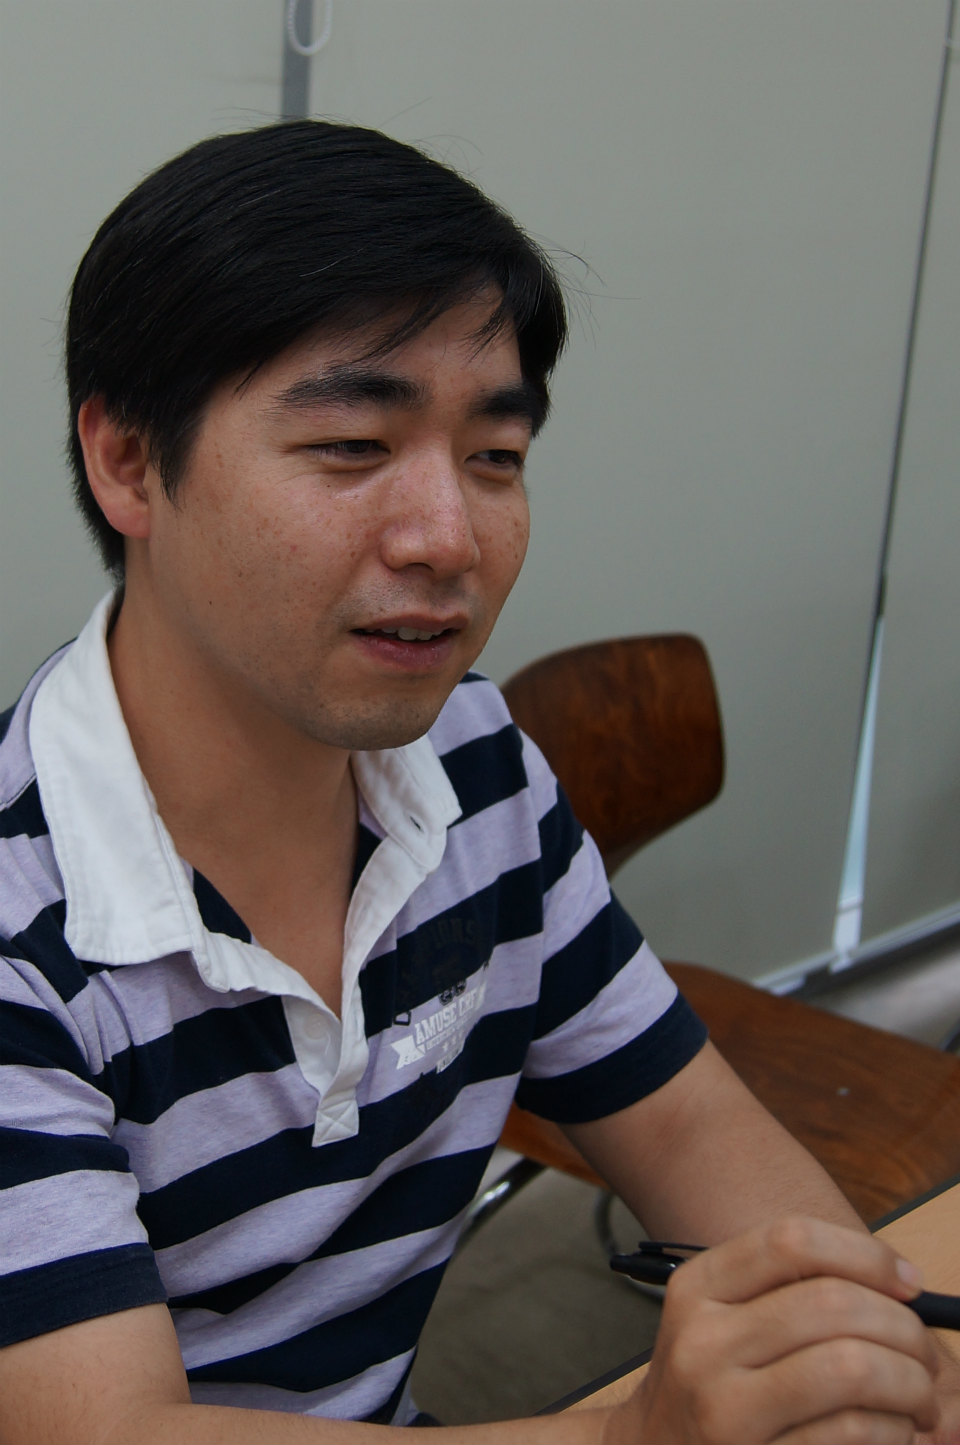 【ぶるてぃあ強化月間】スイカデザインの苦労話や韓国での状況について語られた「ブルーティアーズ」韓国開発会社NextPlayにインタビュー前編の画像